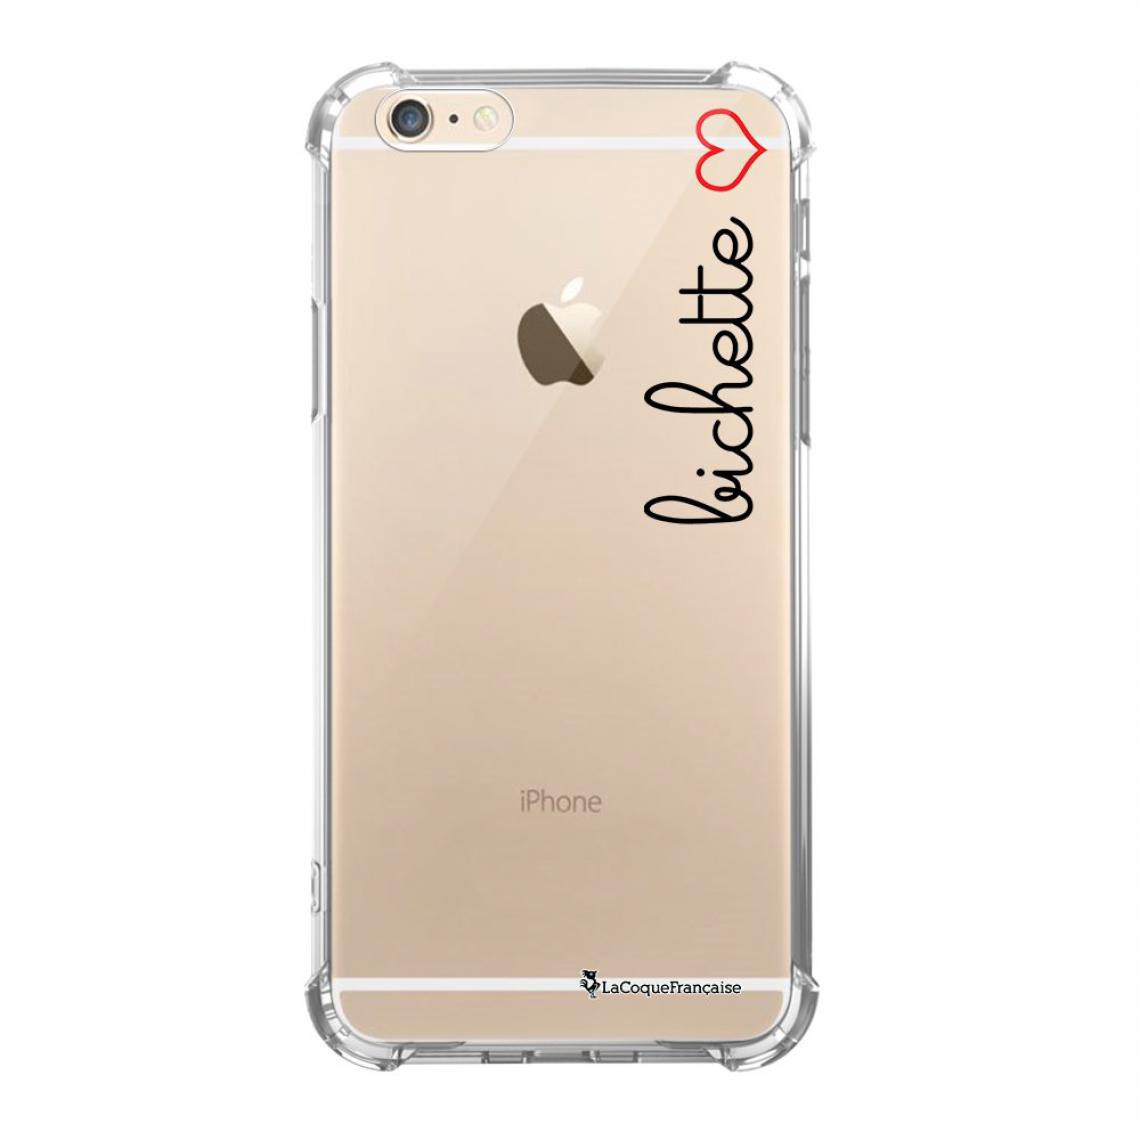 La Coque Francaise - Coque iPhone 6 Plus / 6S Plus silicone anti-choc souple angles renforcés transparente - Coque, étui smartphone